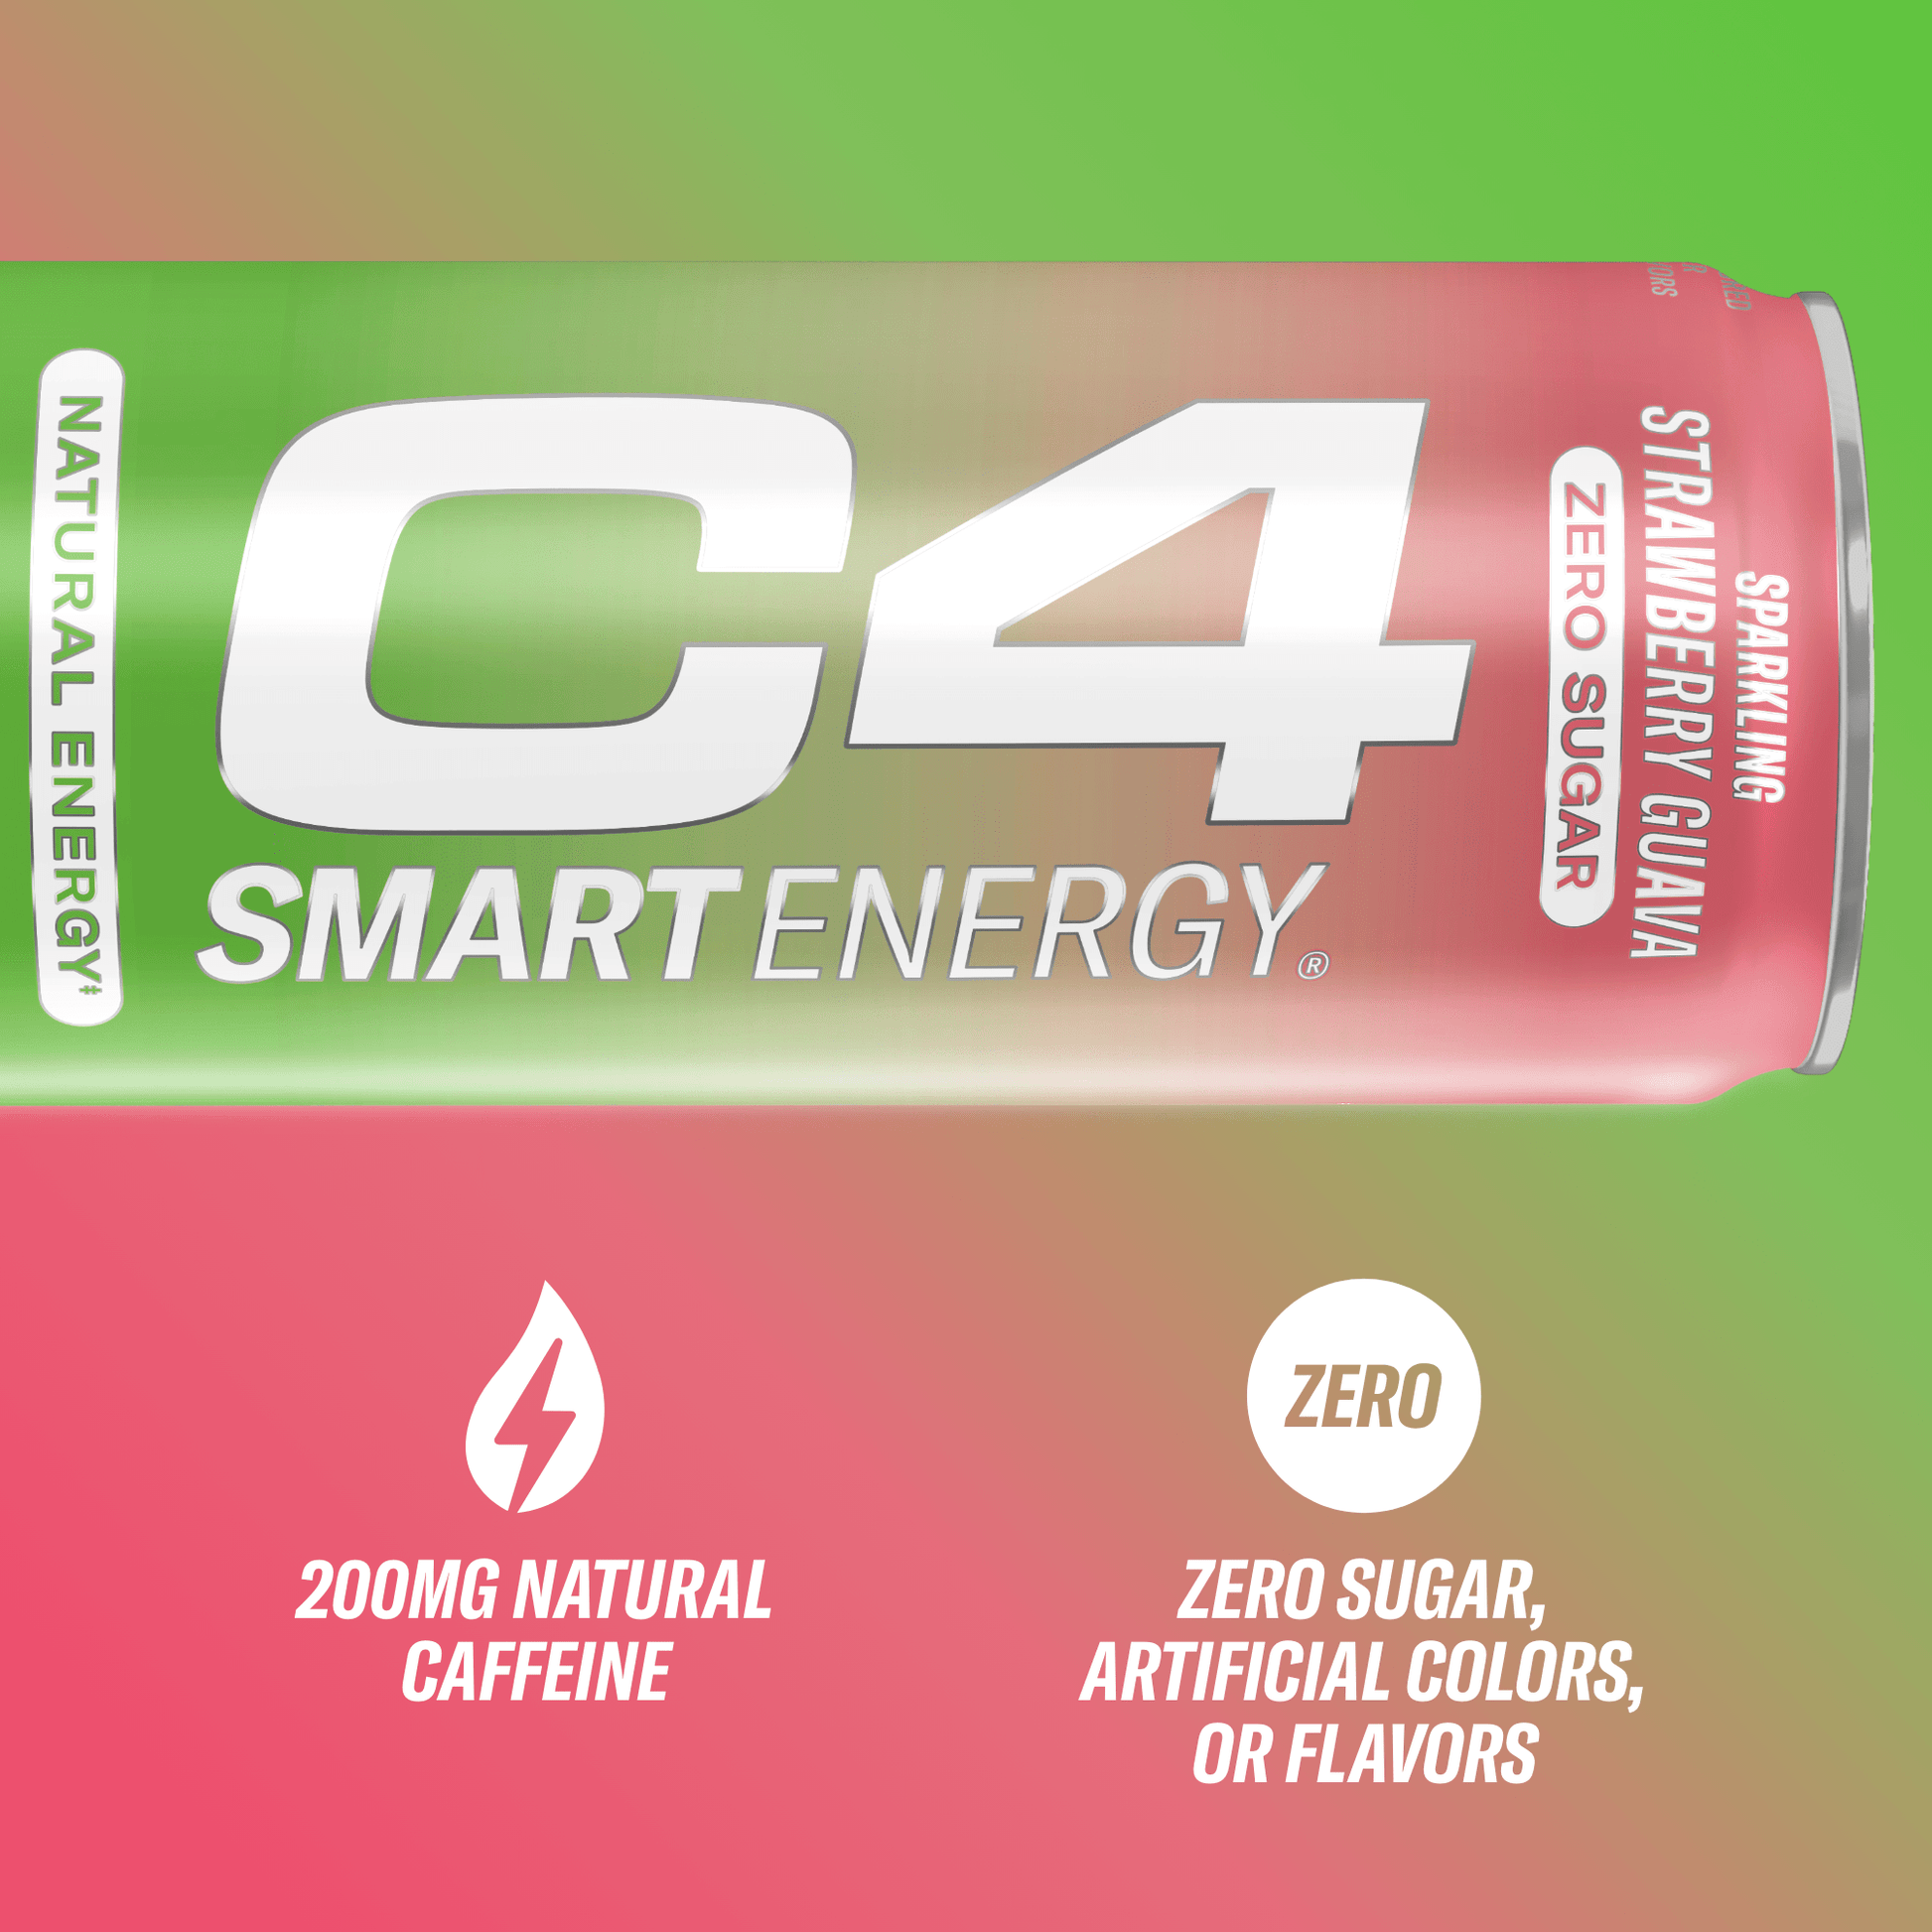 C4 Smart Energy® View 3